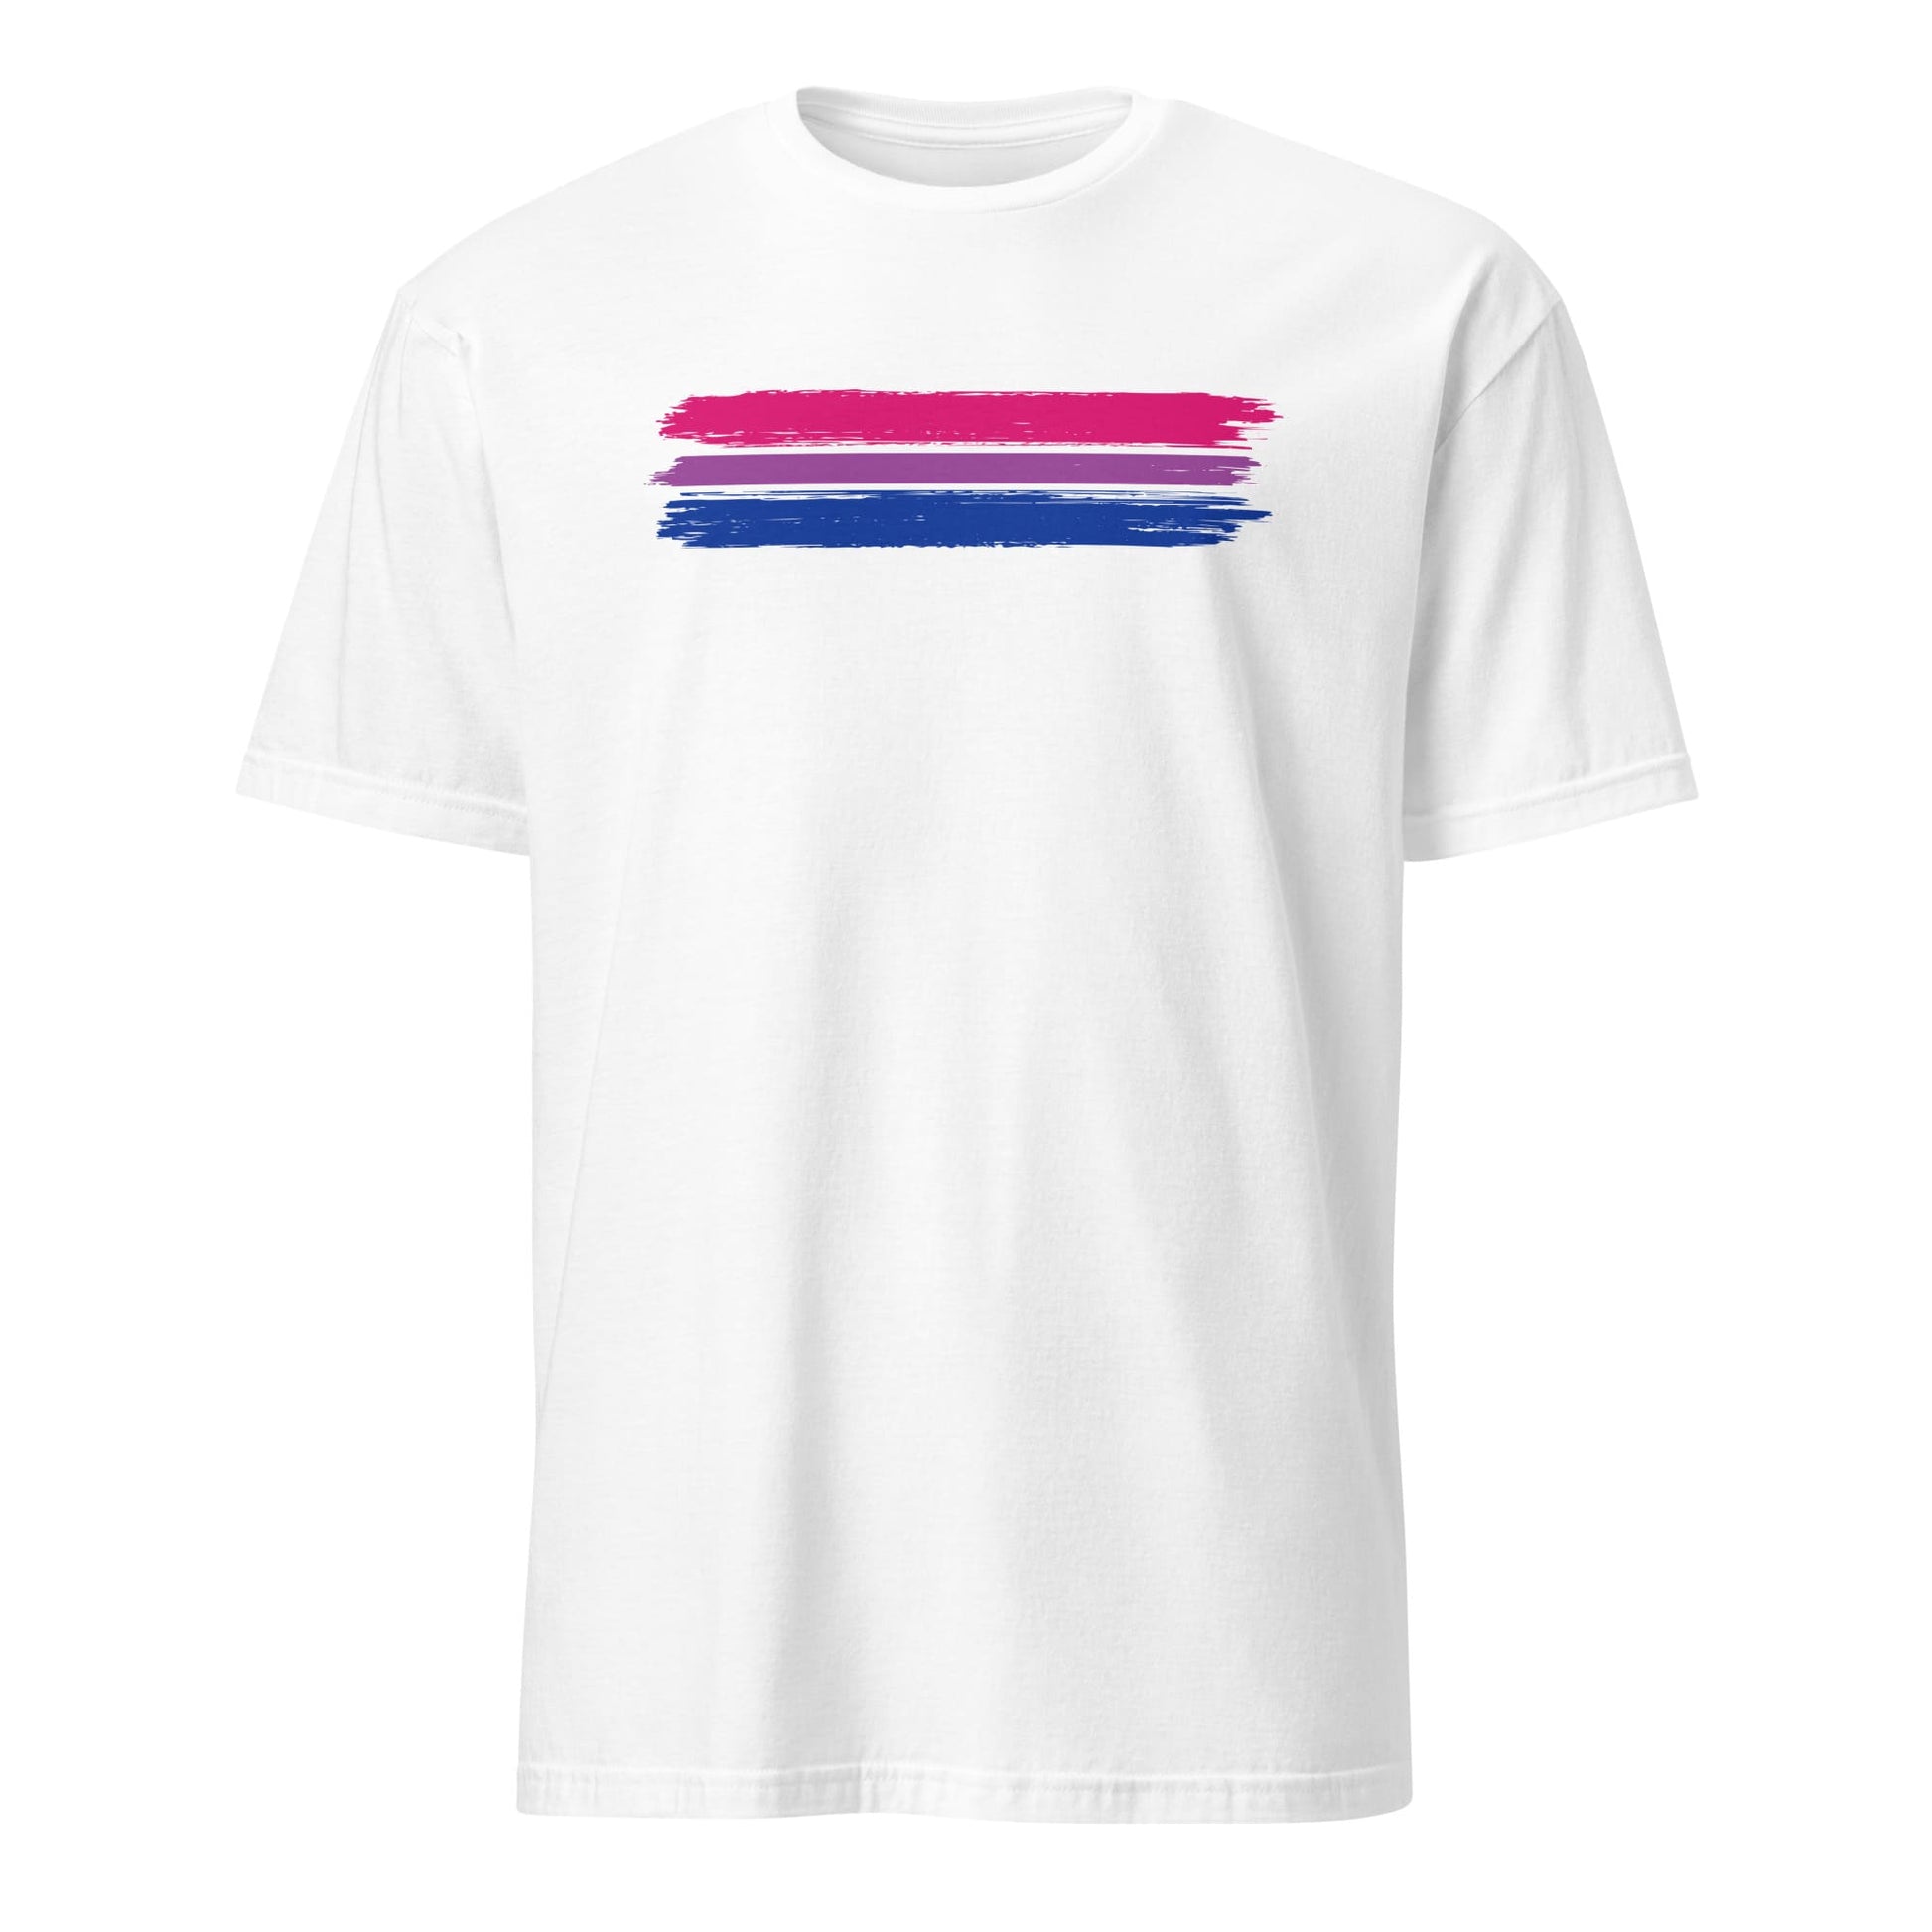 bisexual shirt, grunge bi flag tee, white